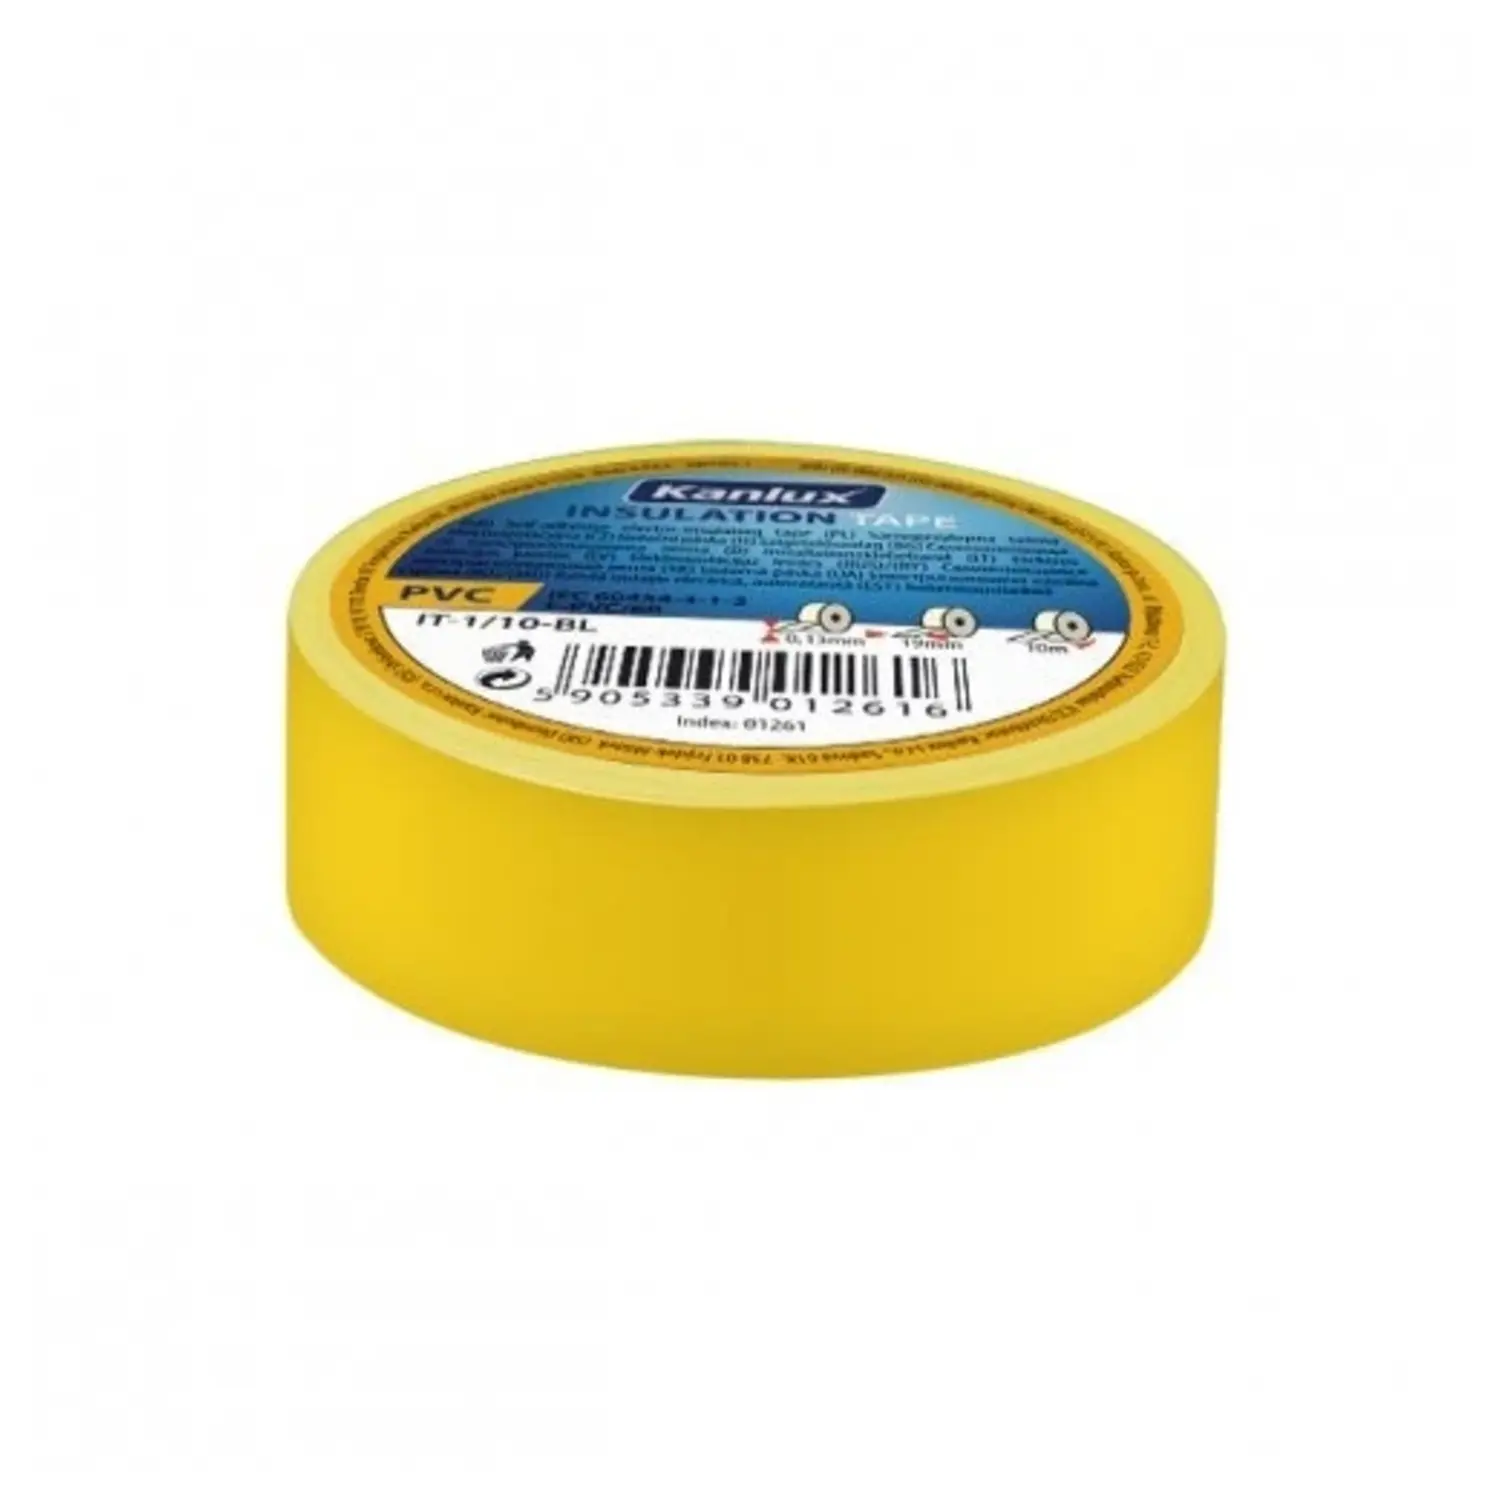 immagine rotolo nastro isolante per elettricista 19 mm giallo CE kan 01272